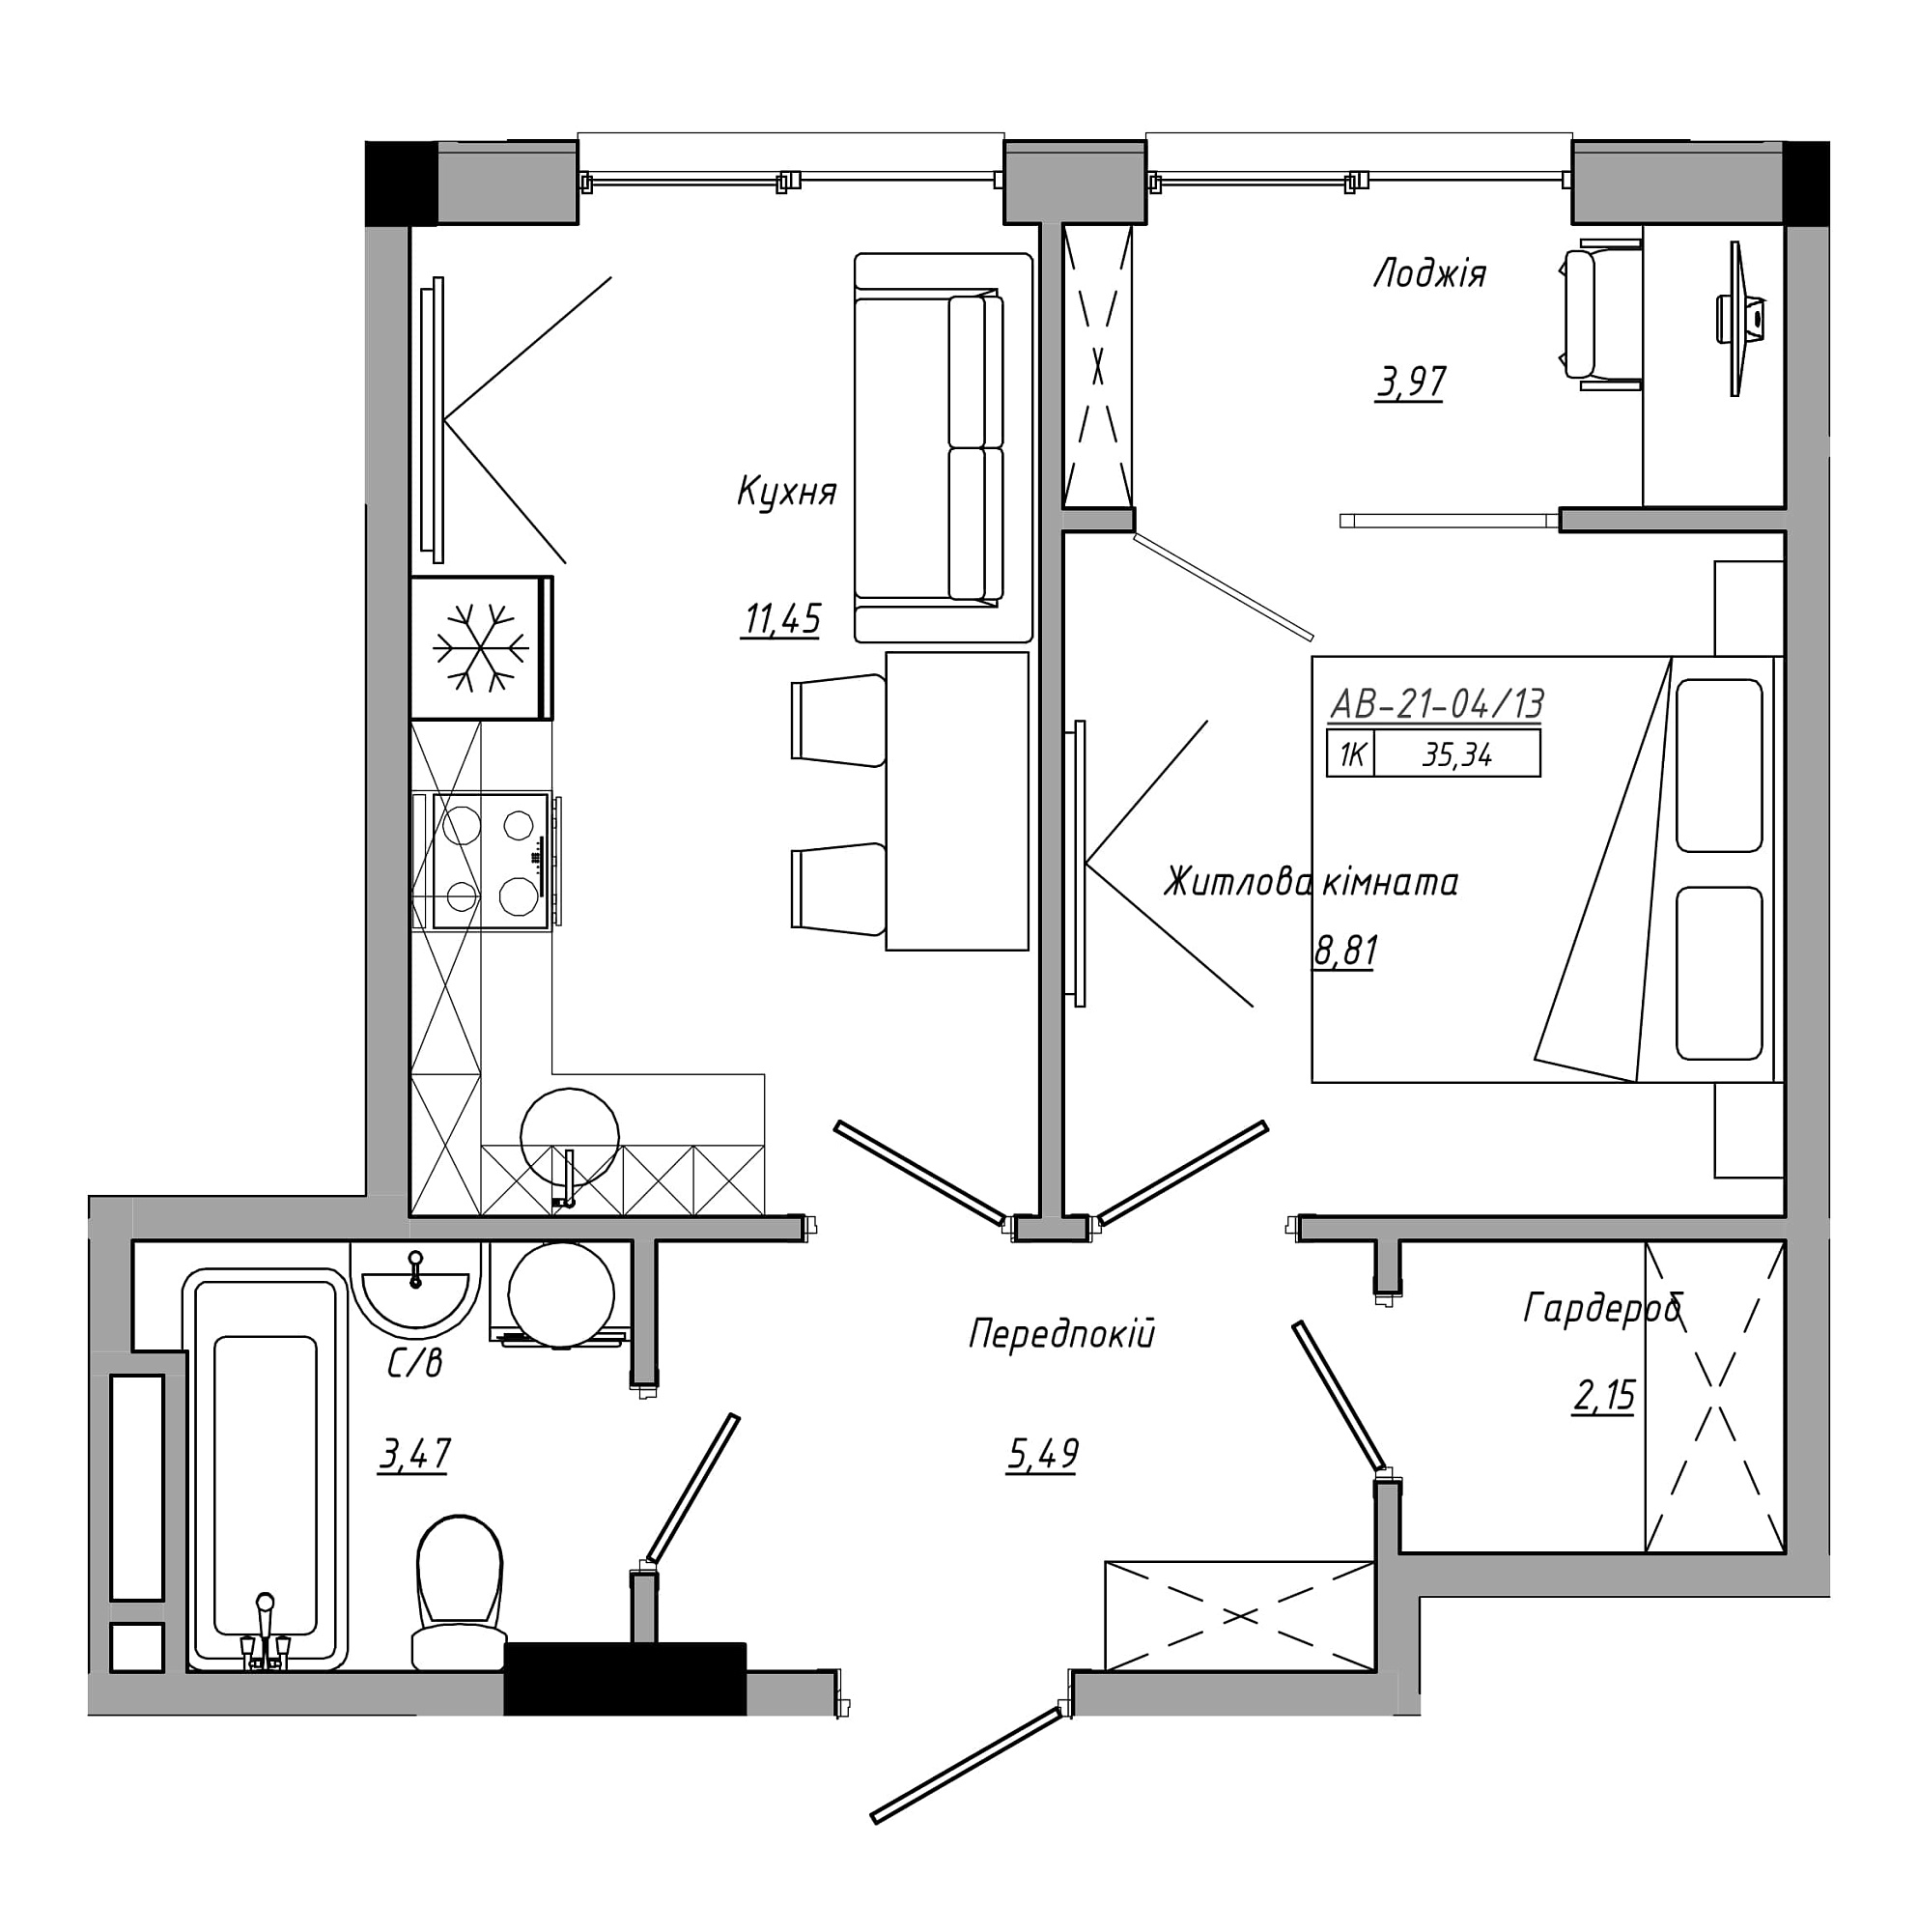 Планировка 1-к квартира площей 35.34м2, AB-21-04/00013.